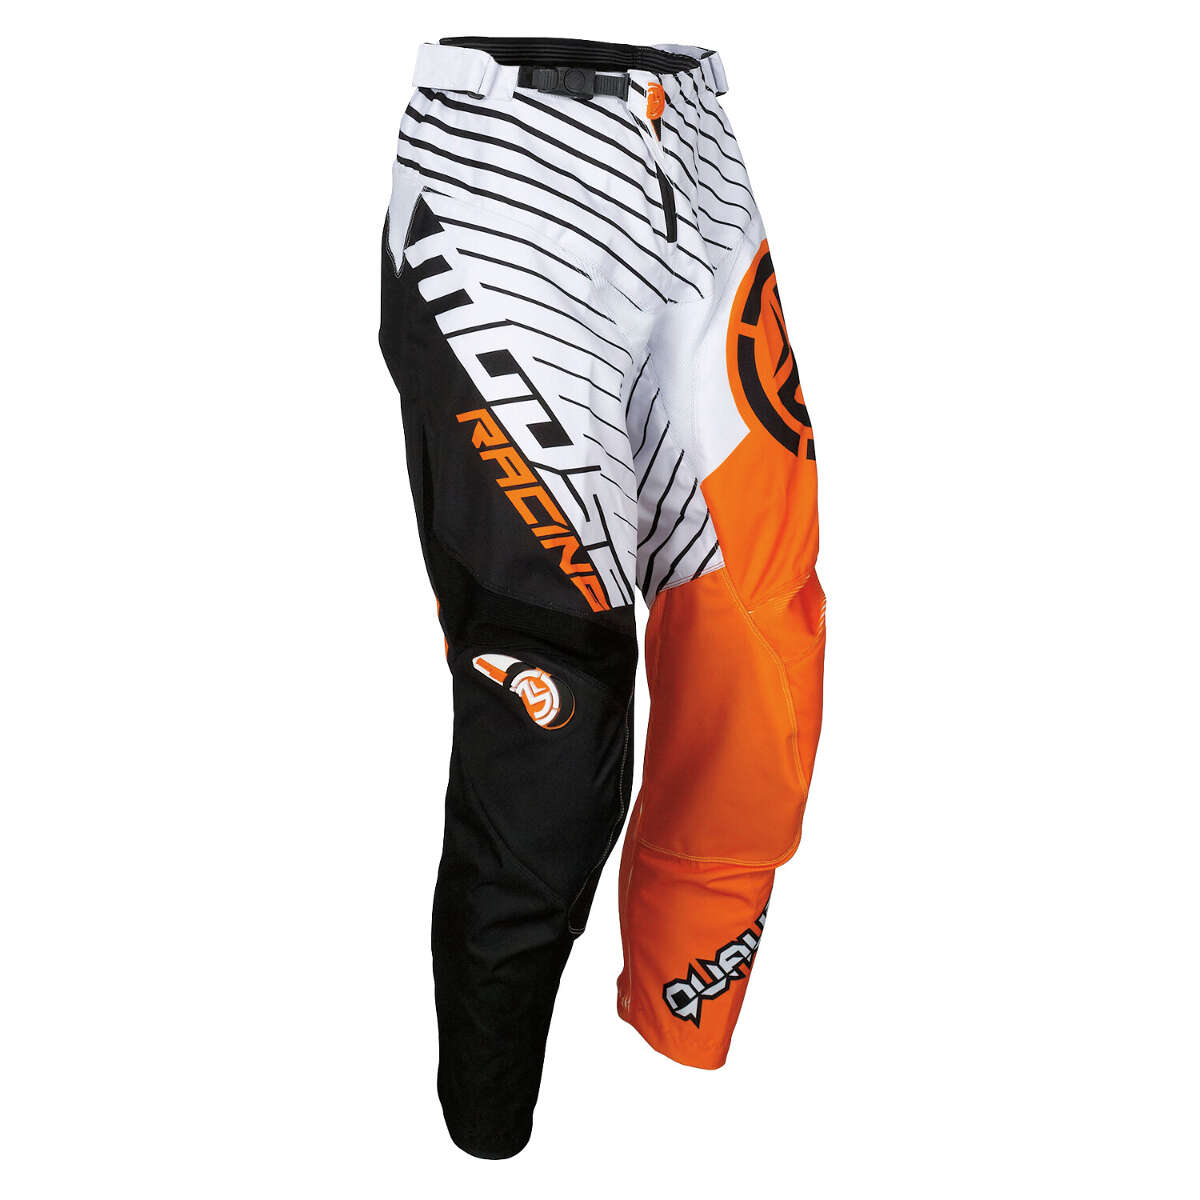 Moose Racing Pantaloni MX Qualifier White/Black/Orange - Large Fit